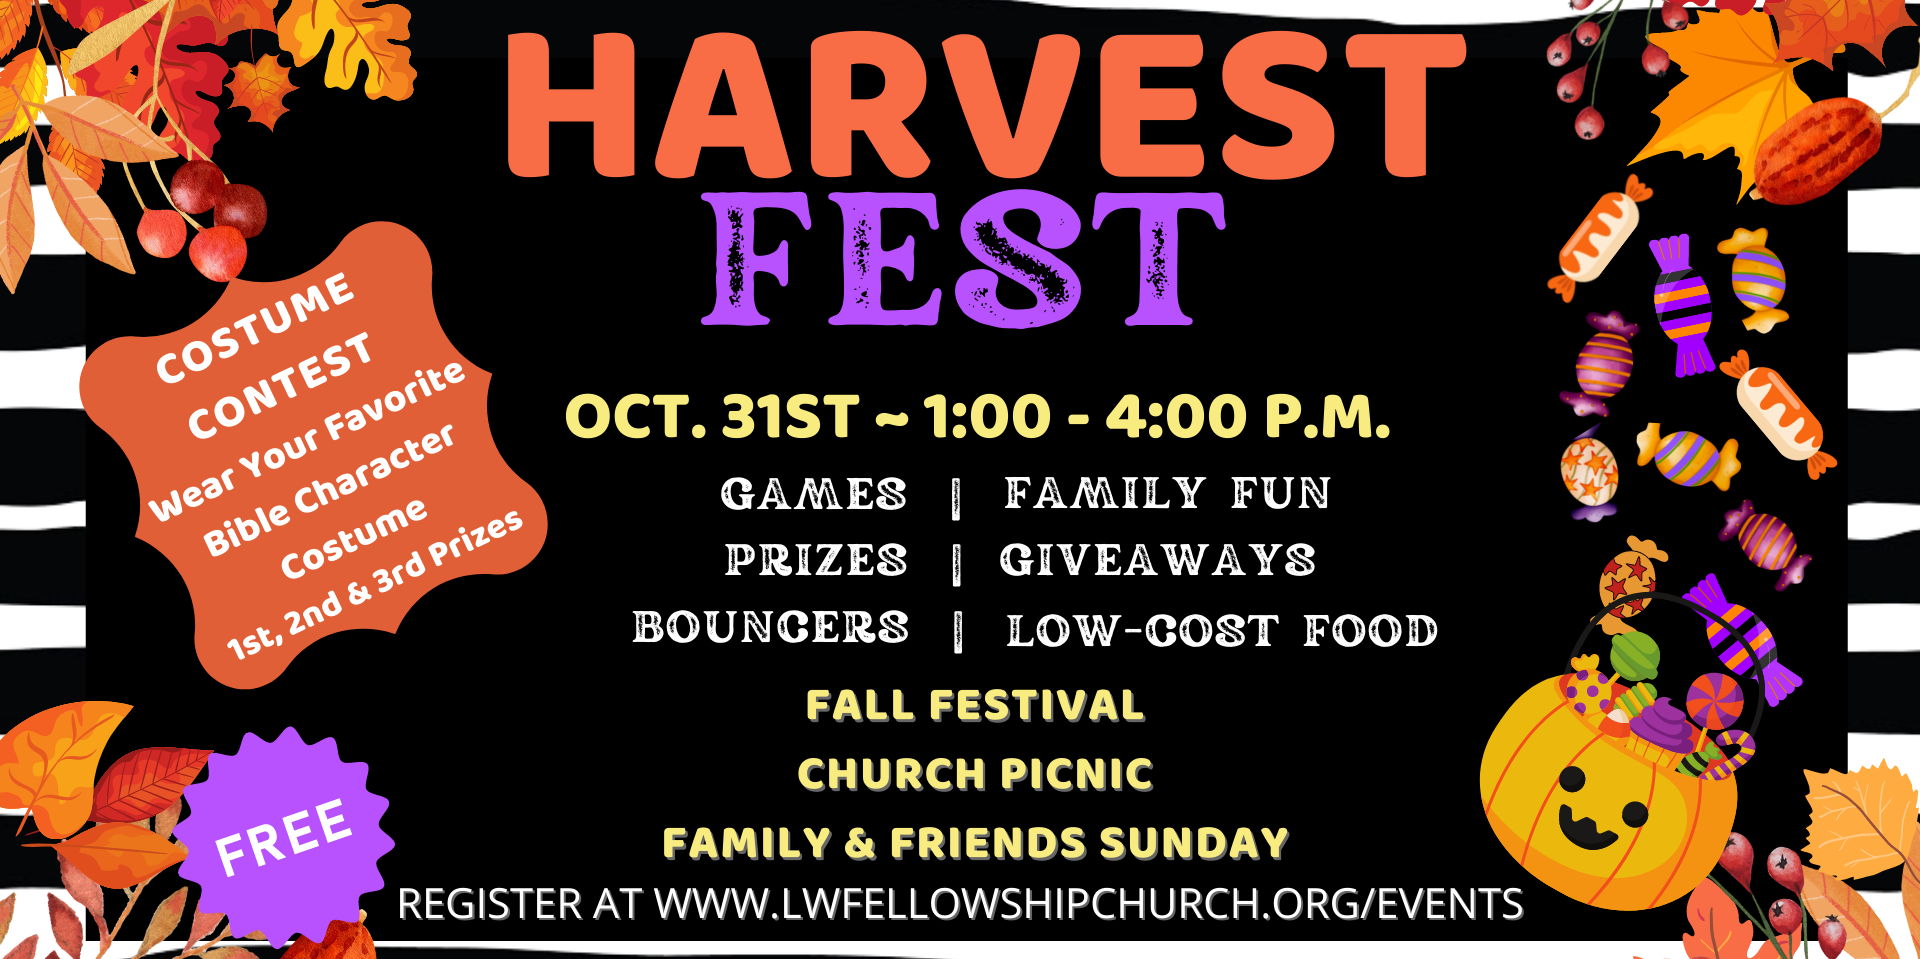 Harvest Fest promotional image